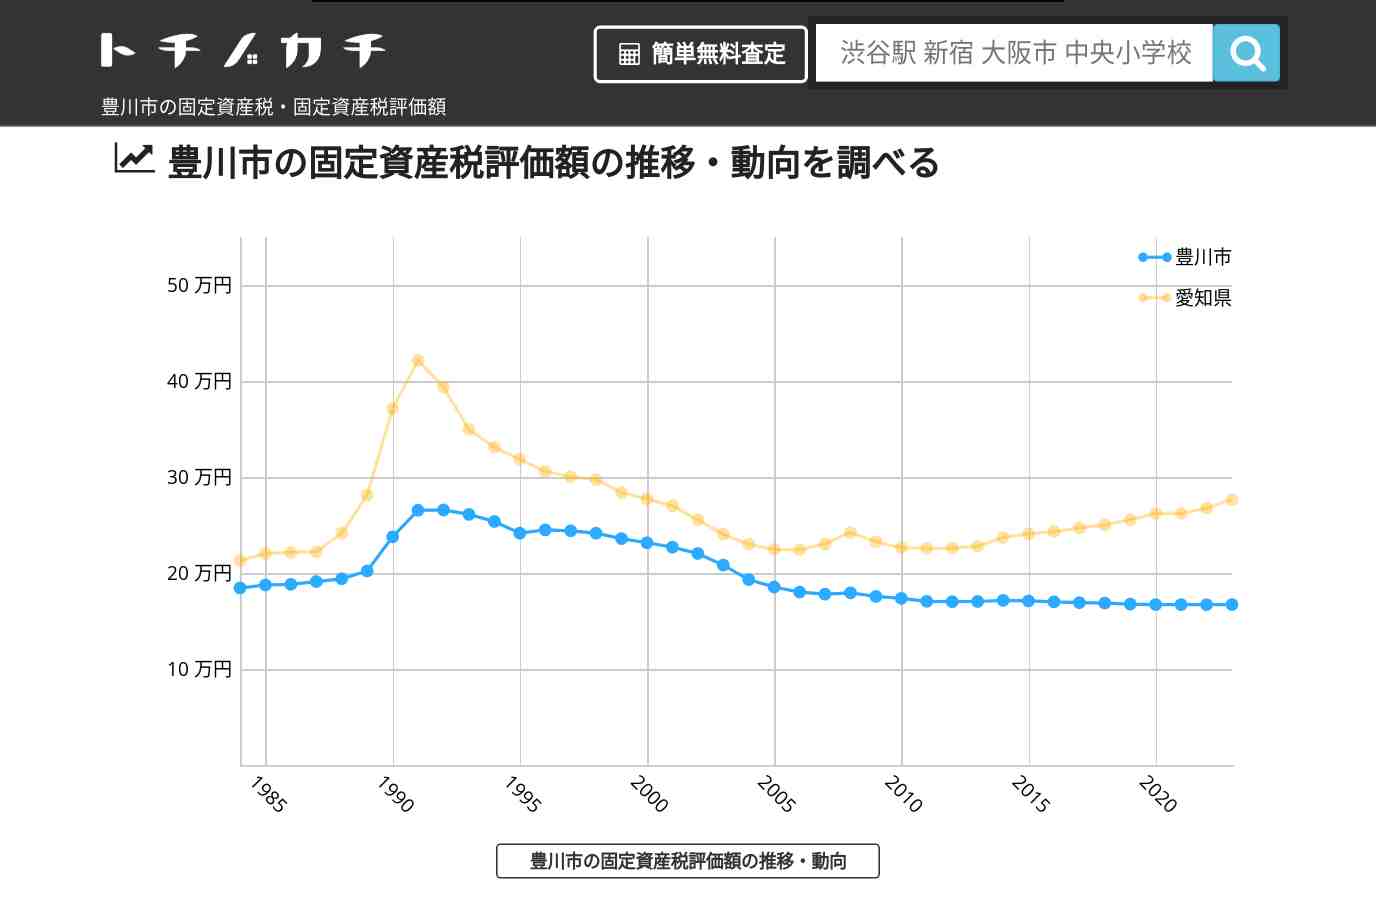 音羽中学校(愛知県 豊川市)周辺の固定資産税・固定資産税評価額 | トチノカチ